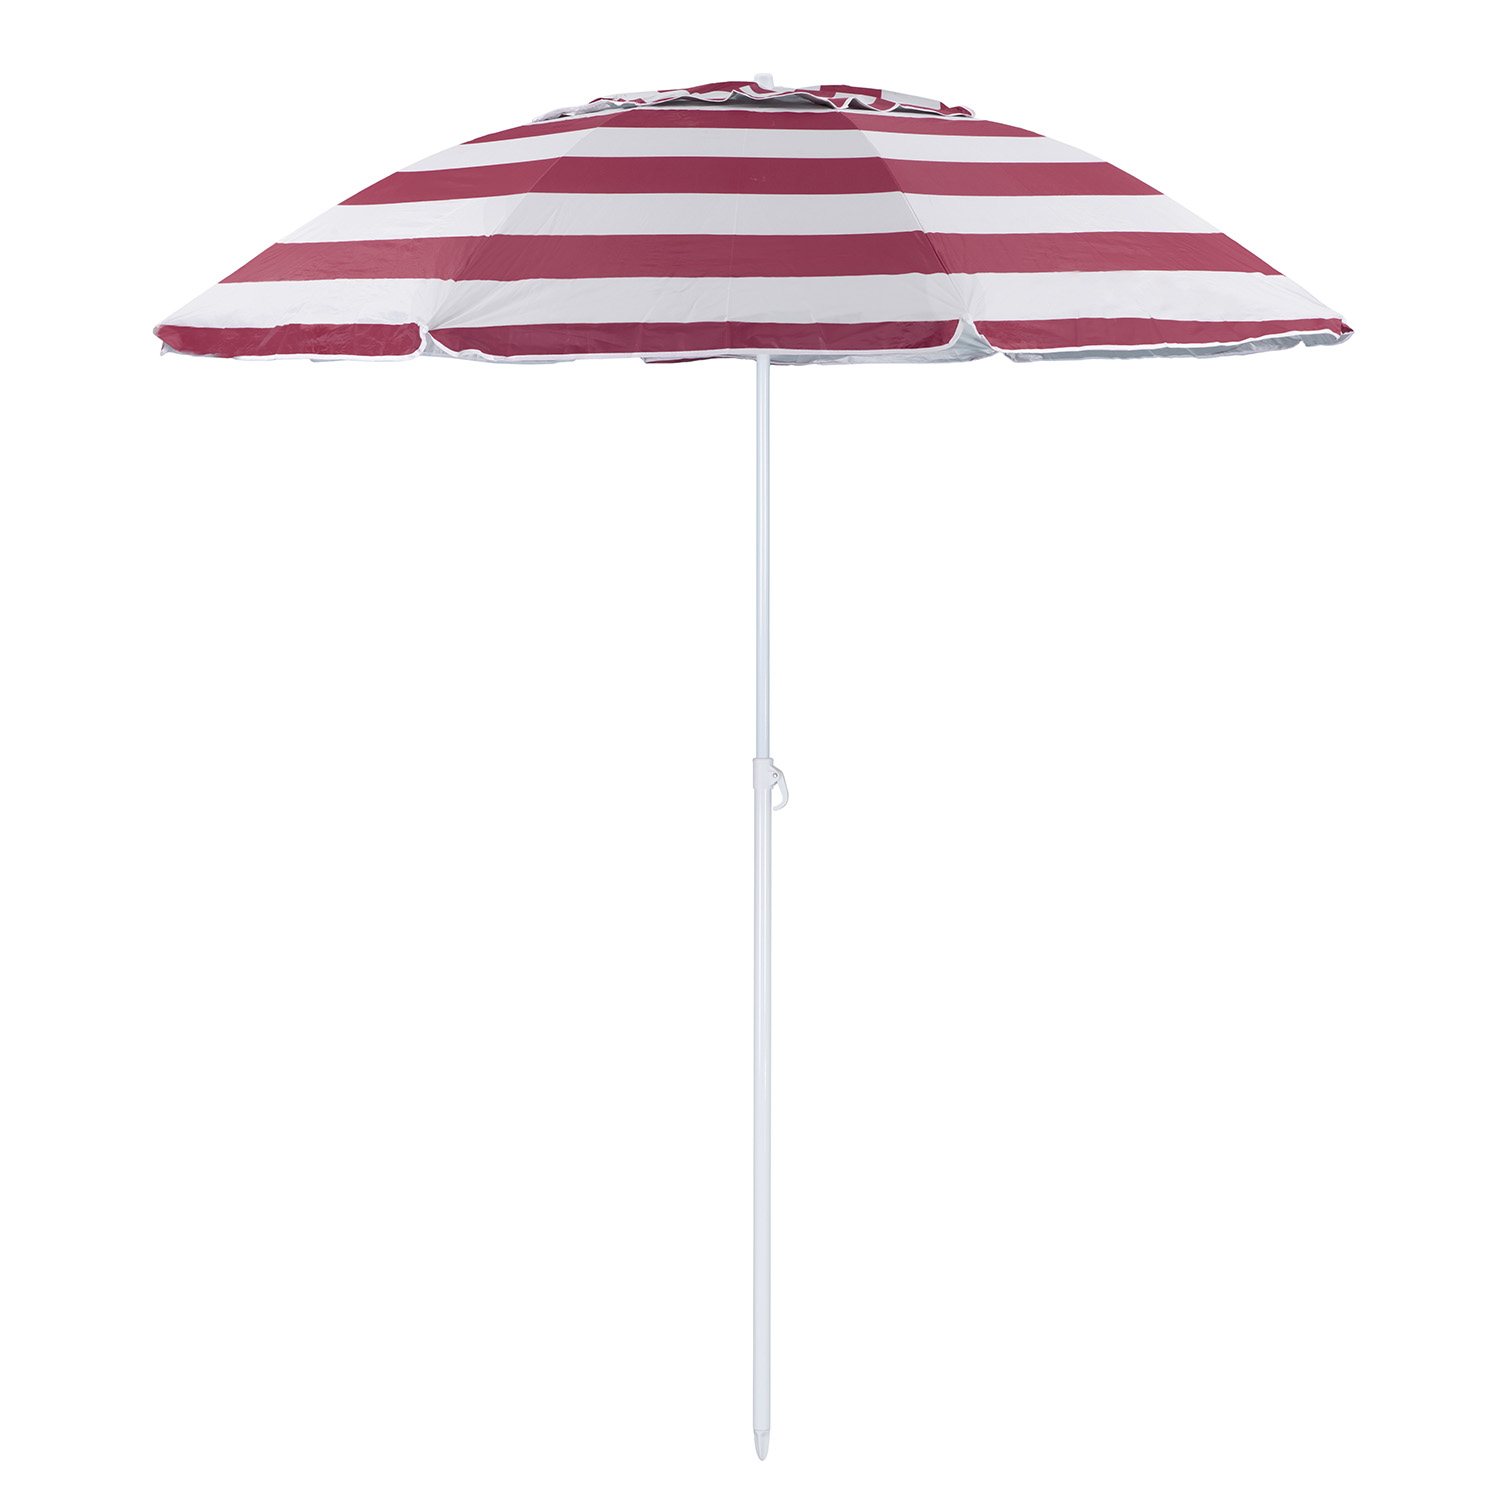 Зонт пляжный BABY STYLE солнцезащитный зонт большой садовый с клапаном 2.2 м бордовый - фото 1